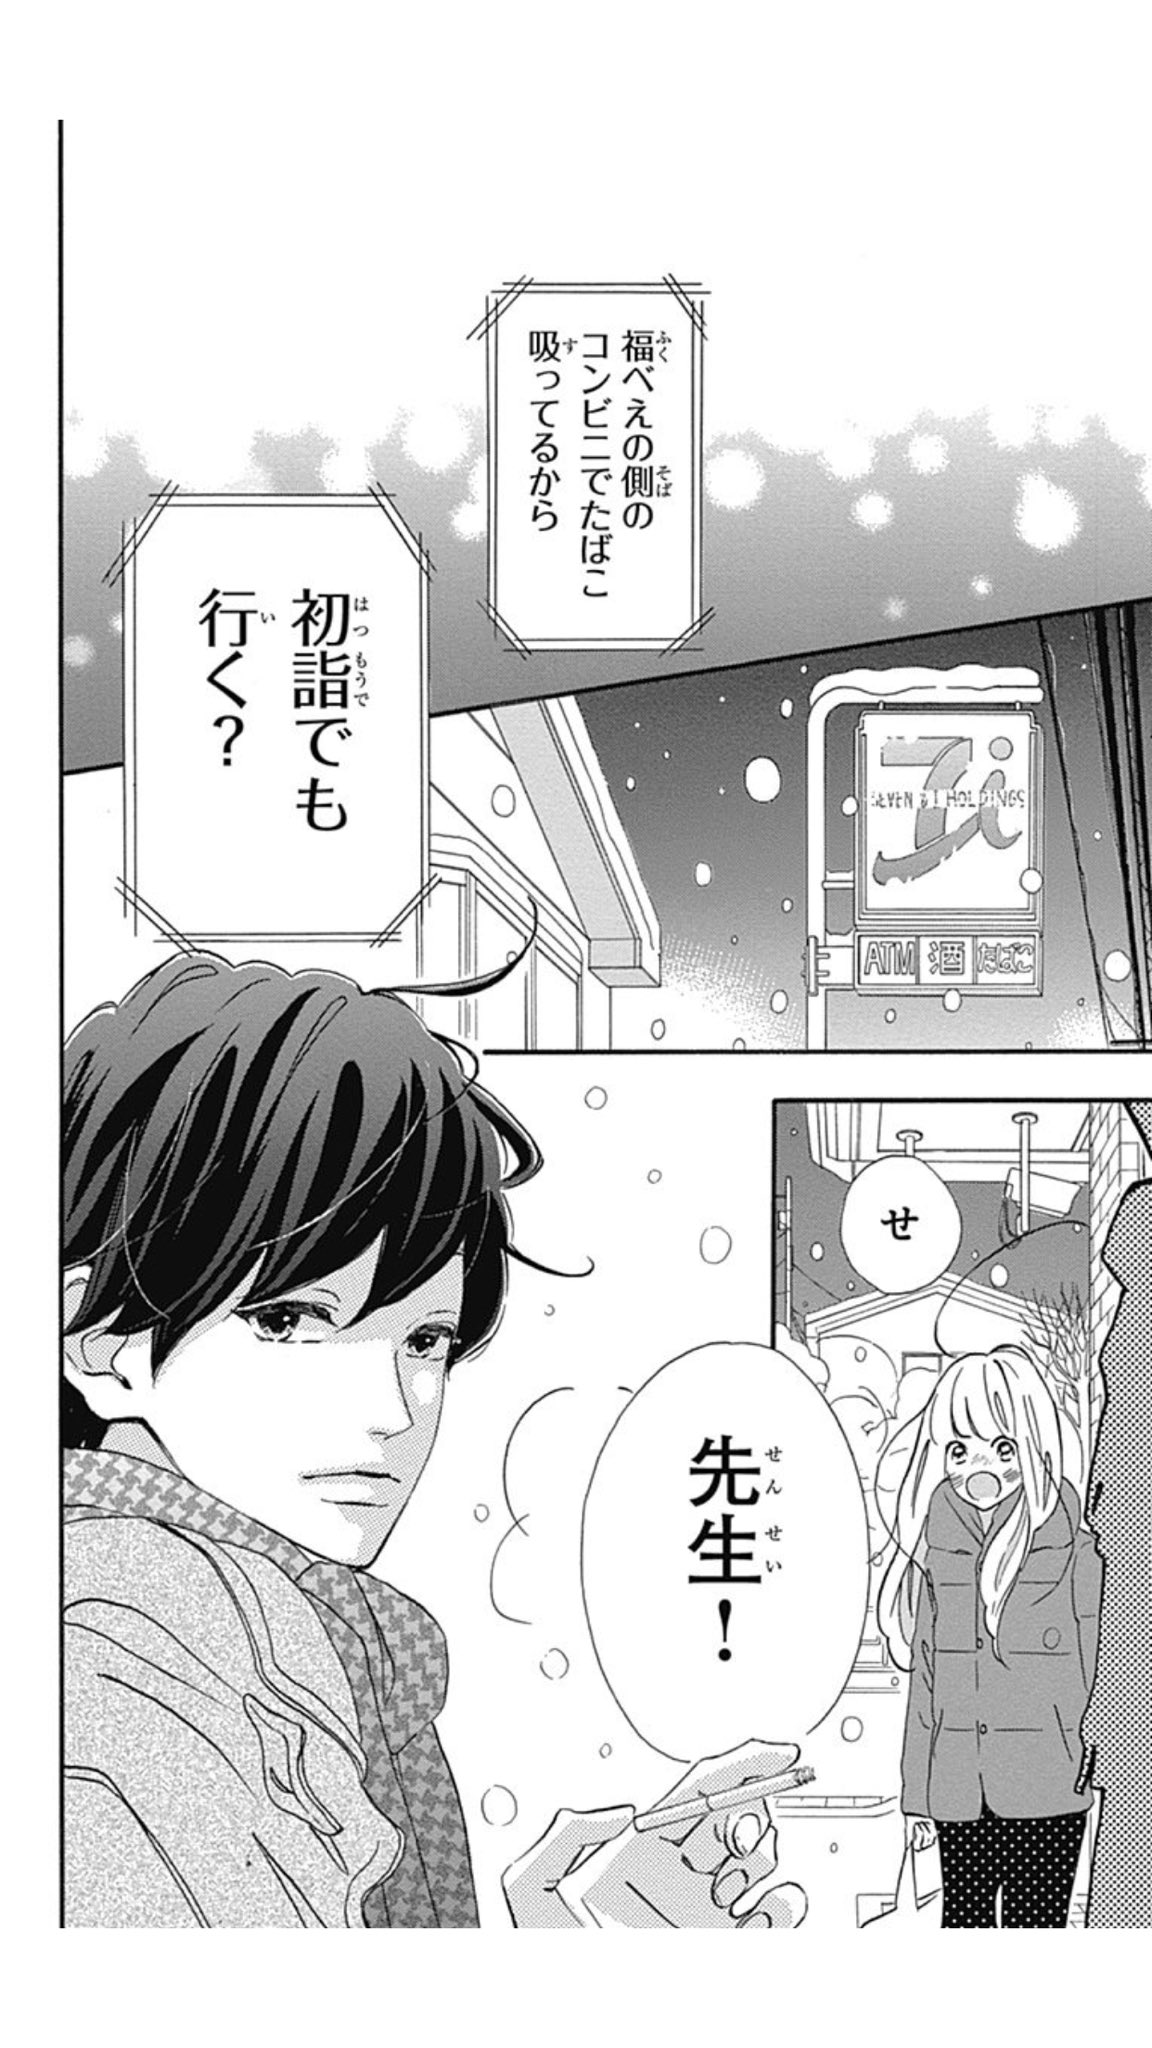 幸田もも子 君がトクベツ 巻3 25発売 雪の中の弘光先生といえば センセイ君主